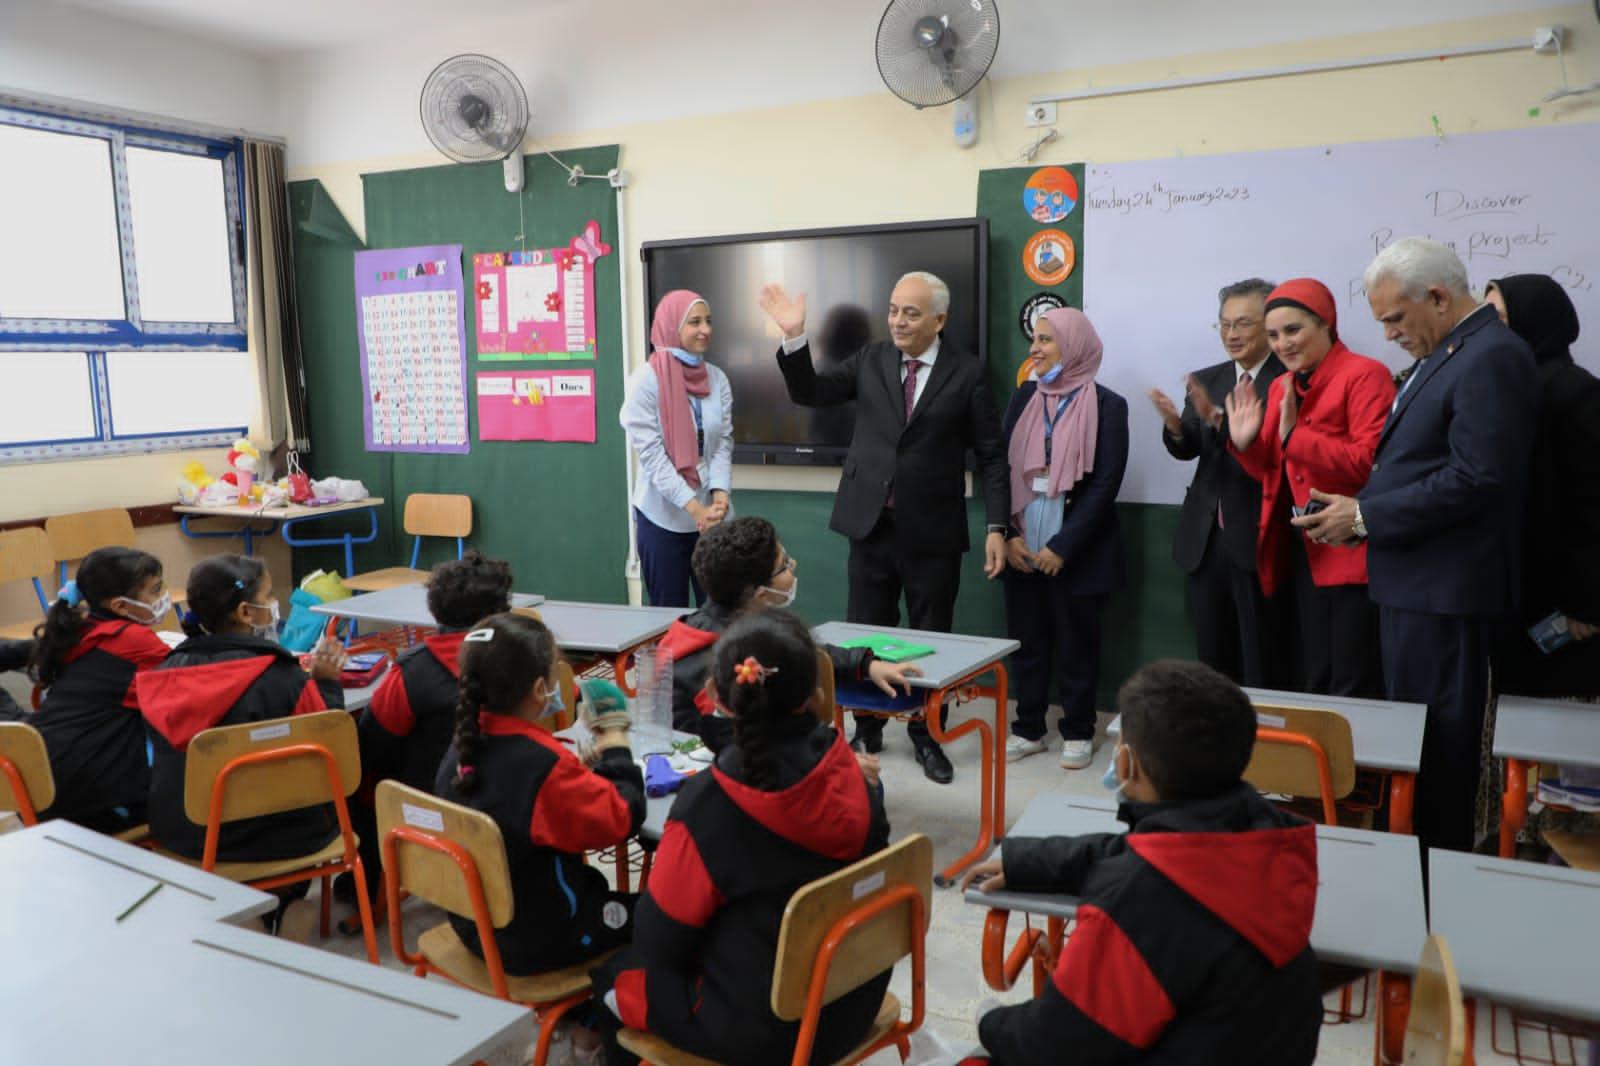 وزير التعليم يتابع انتظام سير العملية التعليمية فى المدرسة الرسمية الدولية بزهراء مدينة نصر